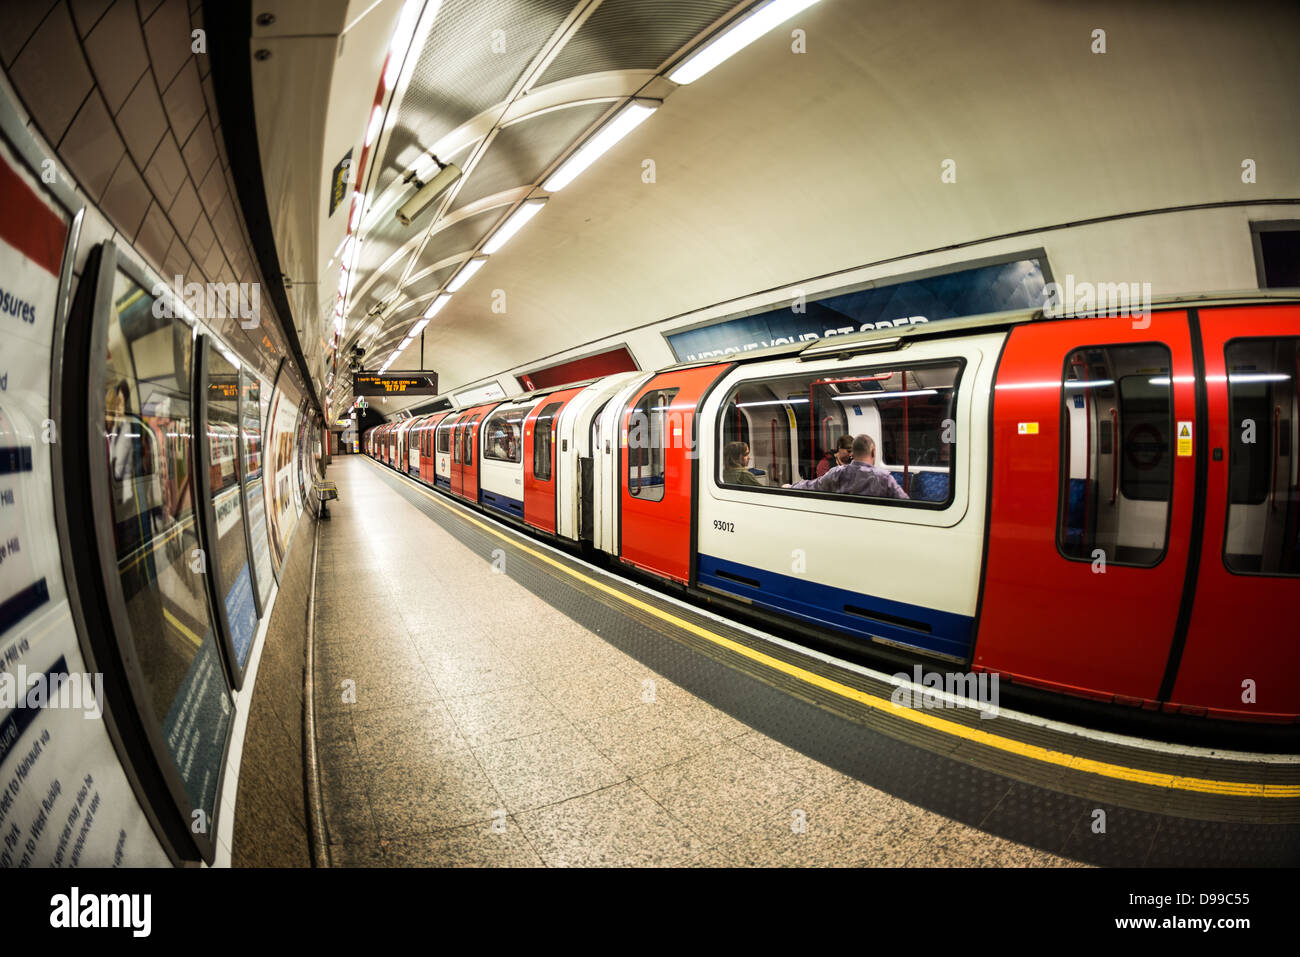 Londres, Royaume-Uni - un train sort d'une plate-forme d'une station de métro de Londres dans le cadre du système de métro célèbre connu sous le nom de tube. Banque D'Images